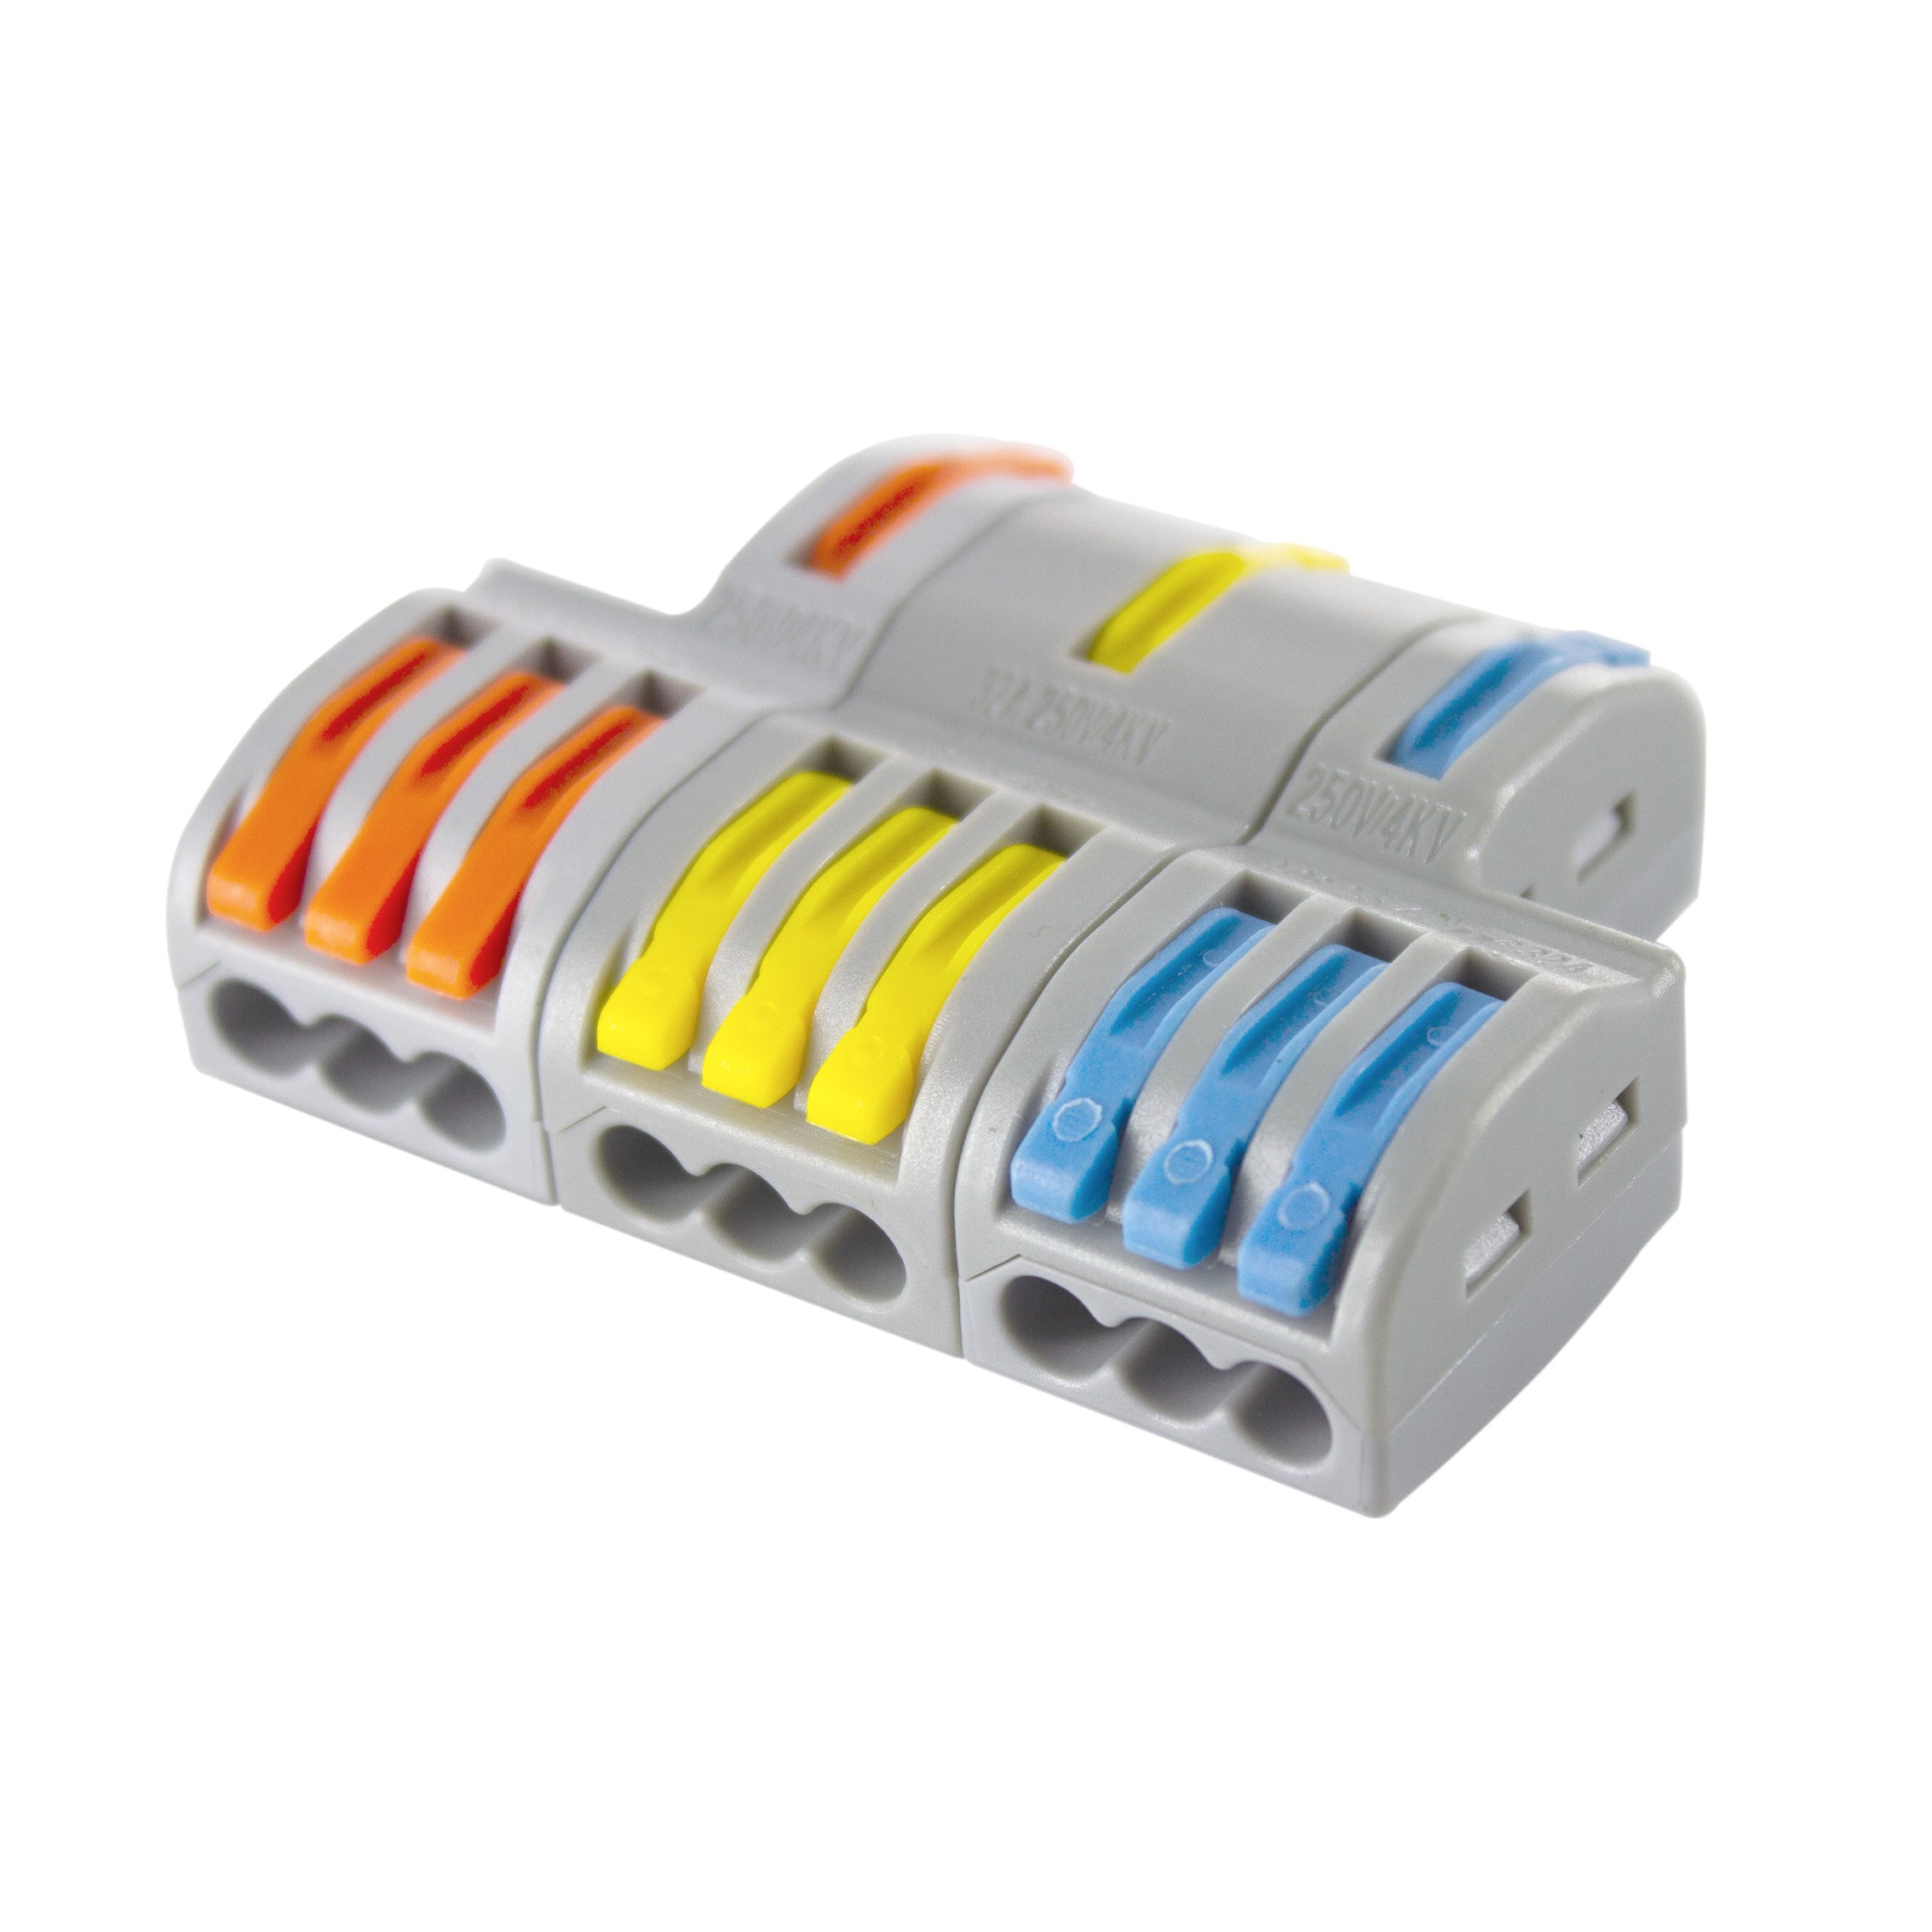 Le Connecteur Câble M25 IP68 3P cable 3x0,75mm2 à 3G3mm2, bornier rapide